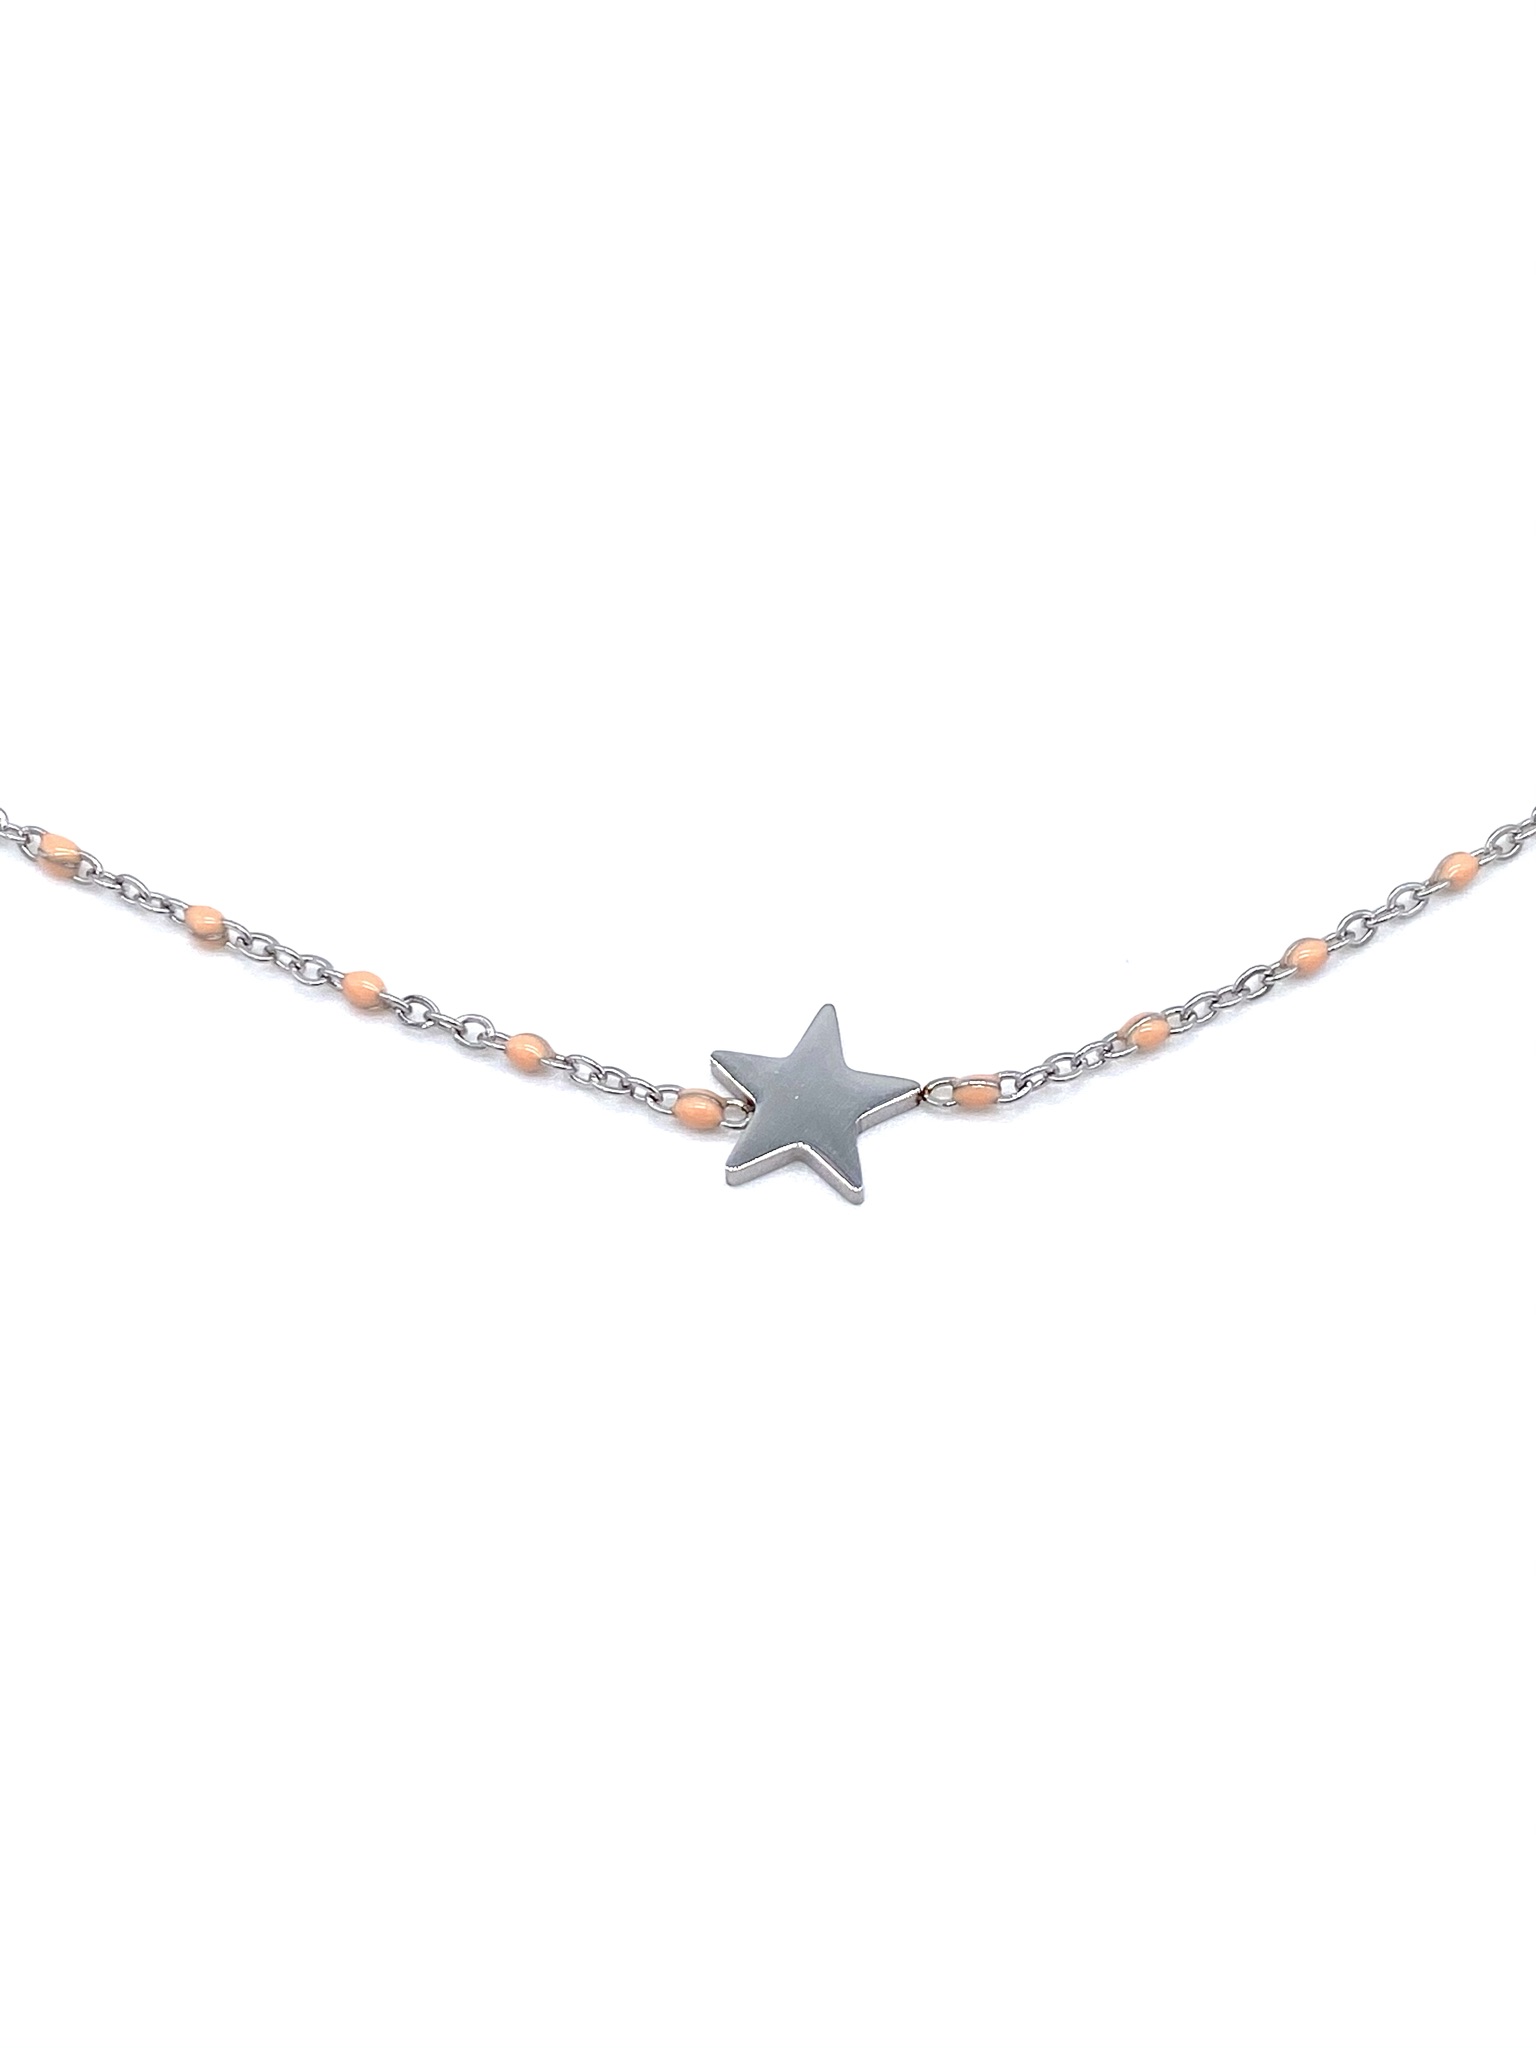 Collier perles avec étoile - Argenté